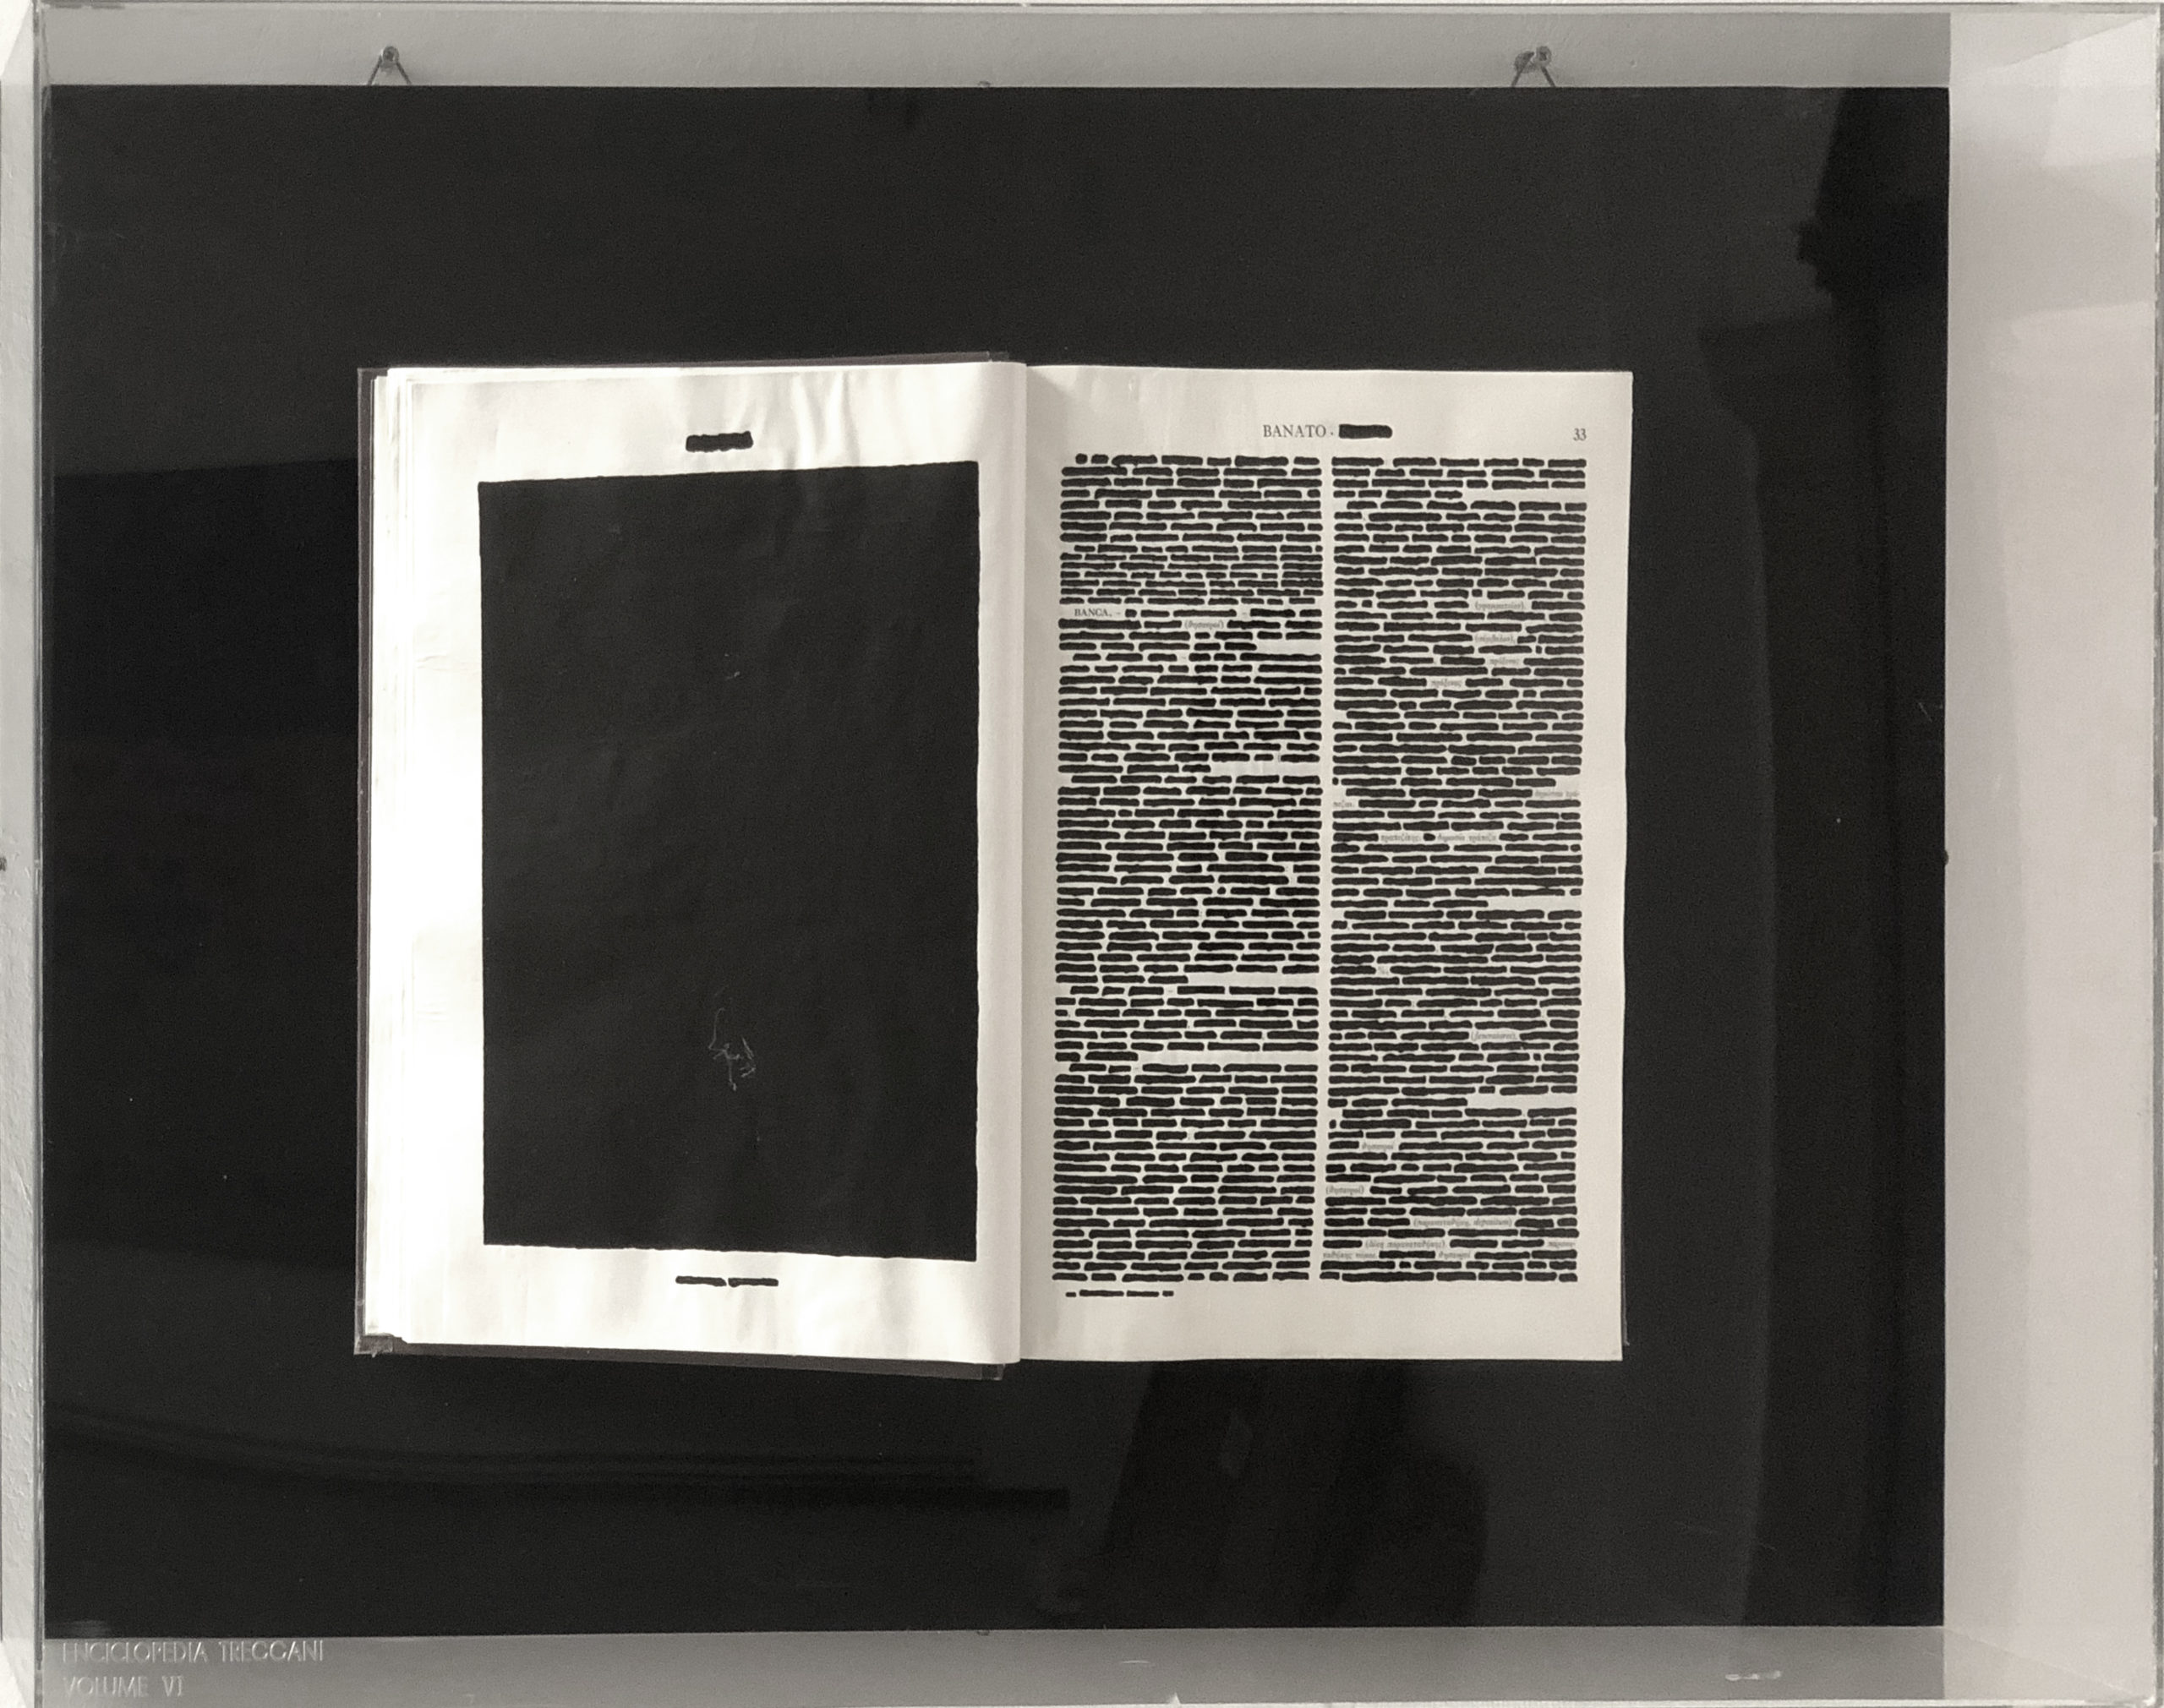 Emilio Isgro′, Volume VI dell’Enciclopedia Treccani “Banato”, 1970 intervento su libro montato su legno in teca di plexiglas 75 x 50 cm